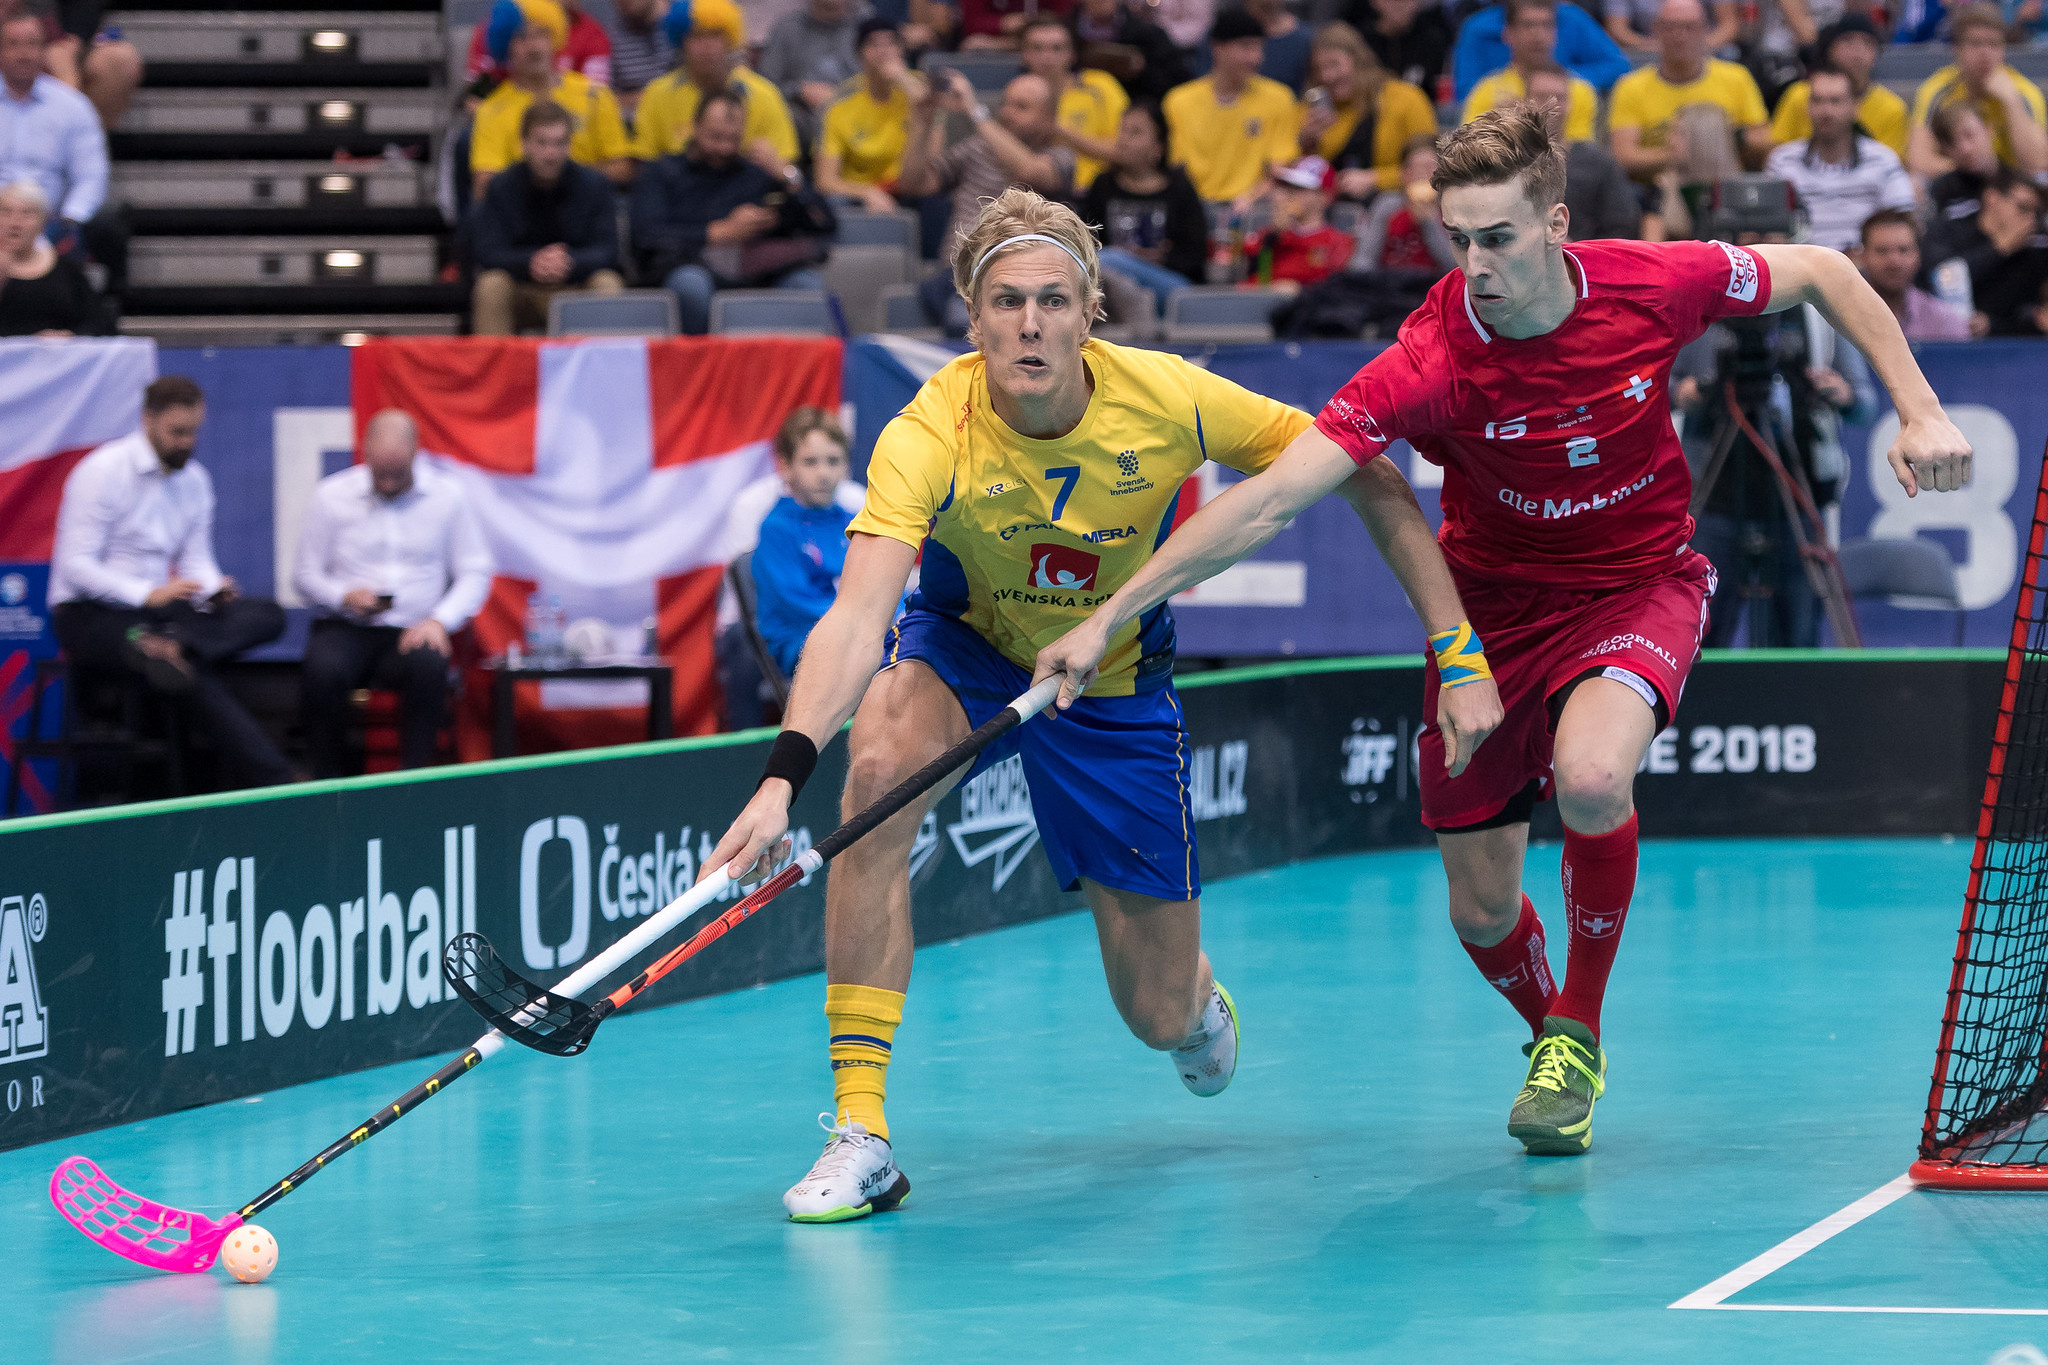 Floorball: Sweden vs. Switzerland, The 2018 WFC Finals game. 2050x1370 HD Wallpaper.